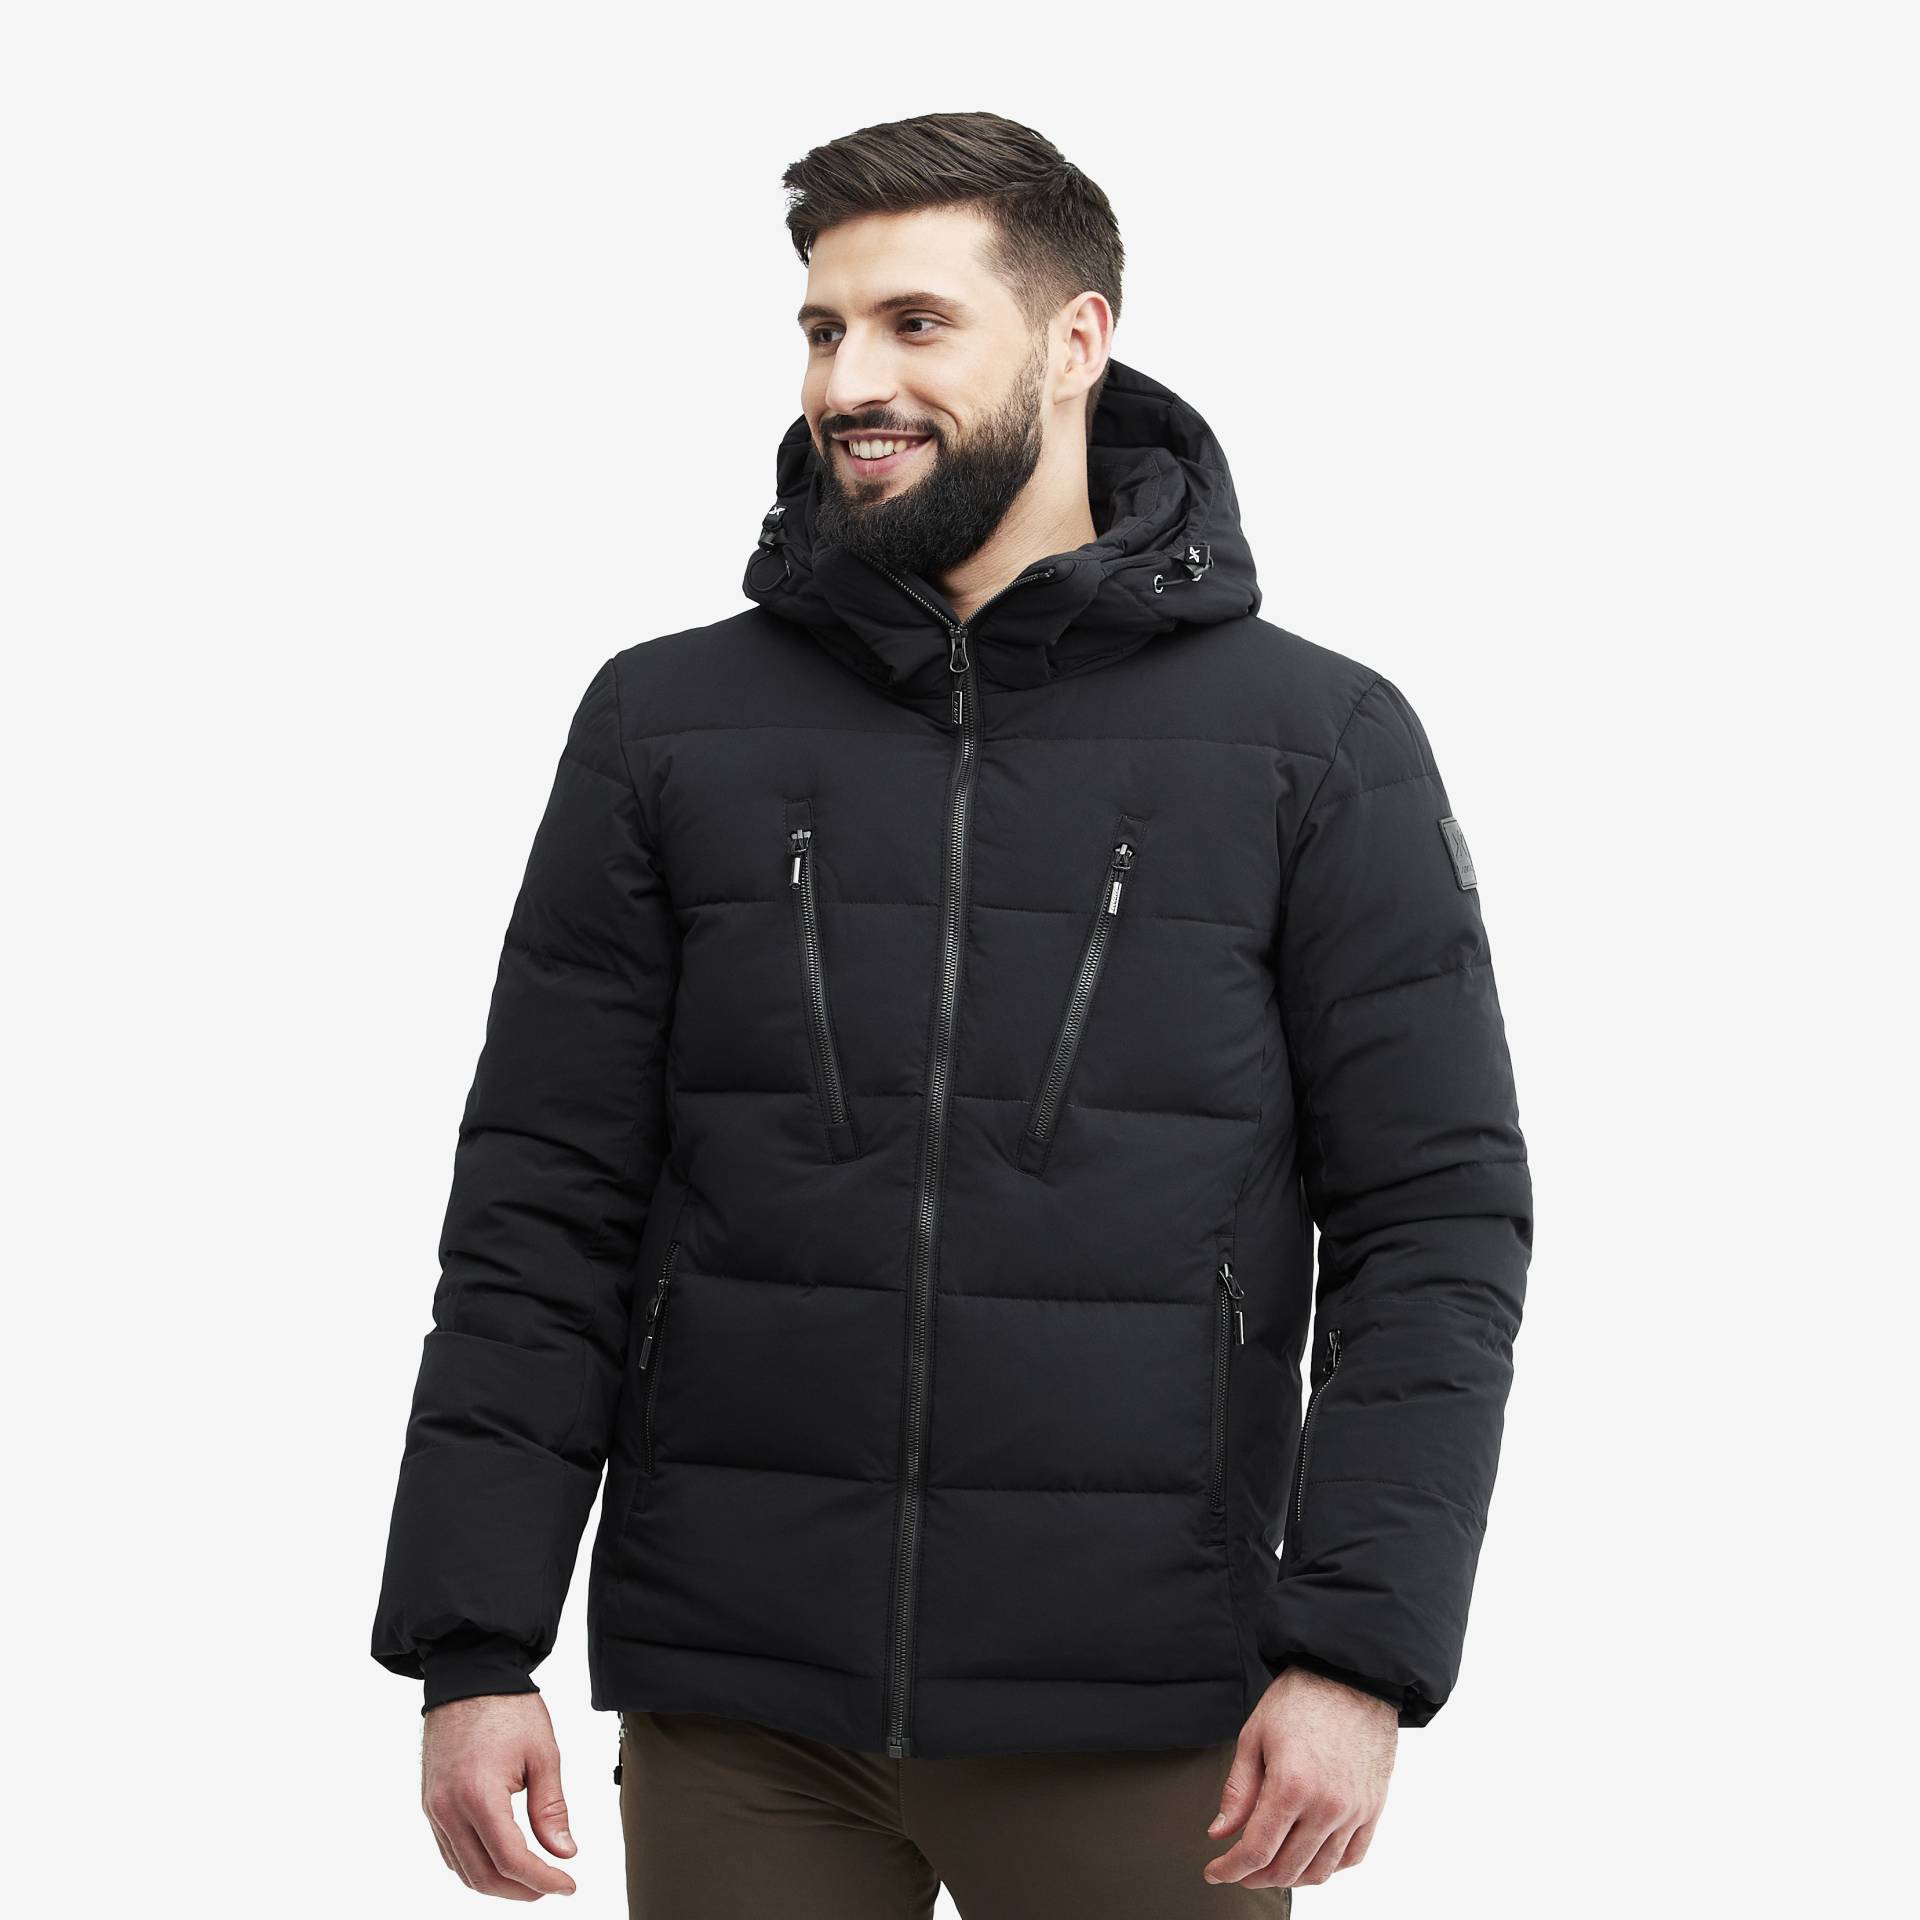 Igloo Jacket Herren Black, Größe:2XL - Skijacken von RevolutionRace